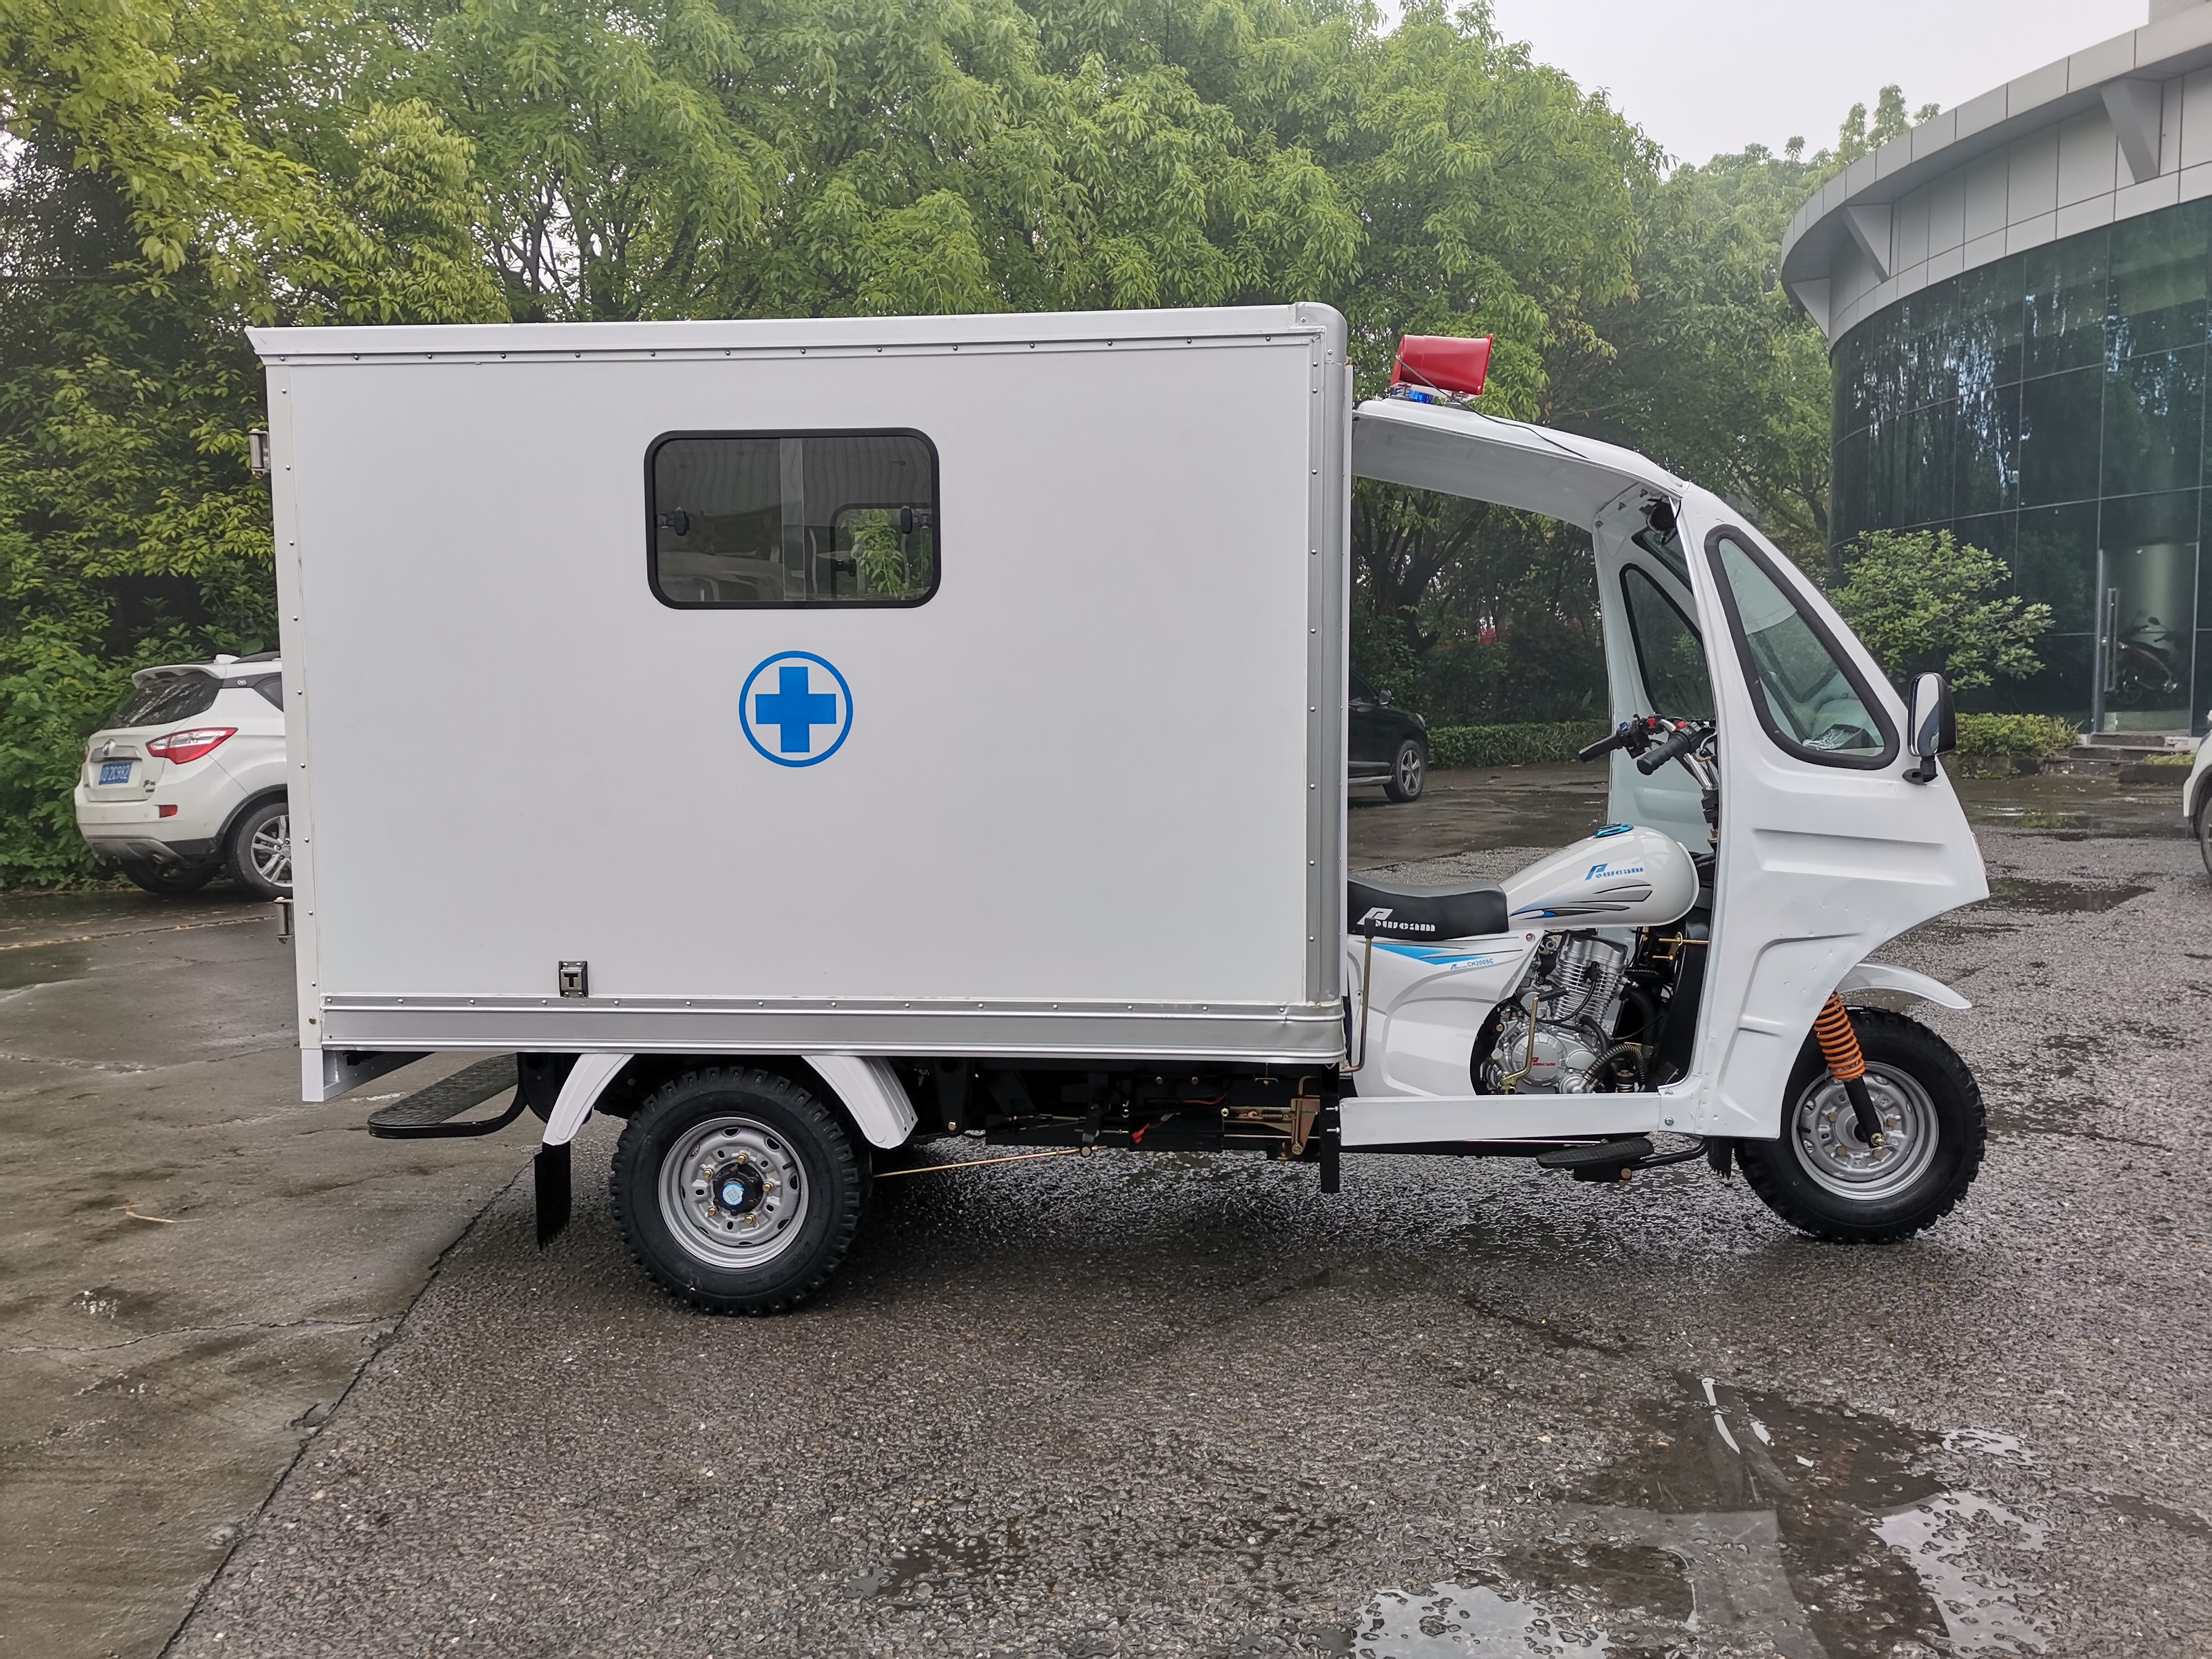 Ambulances de 3 ruedas para eventos deportivos.